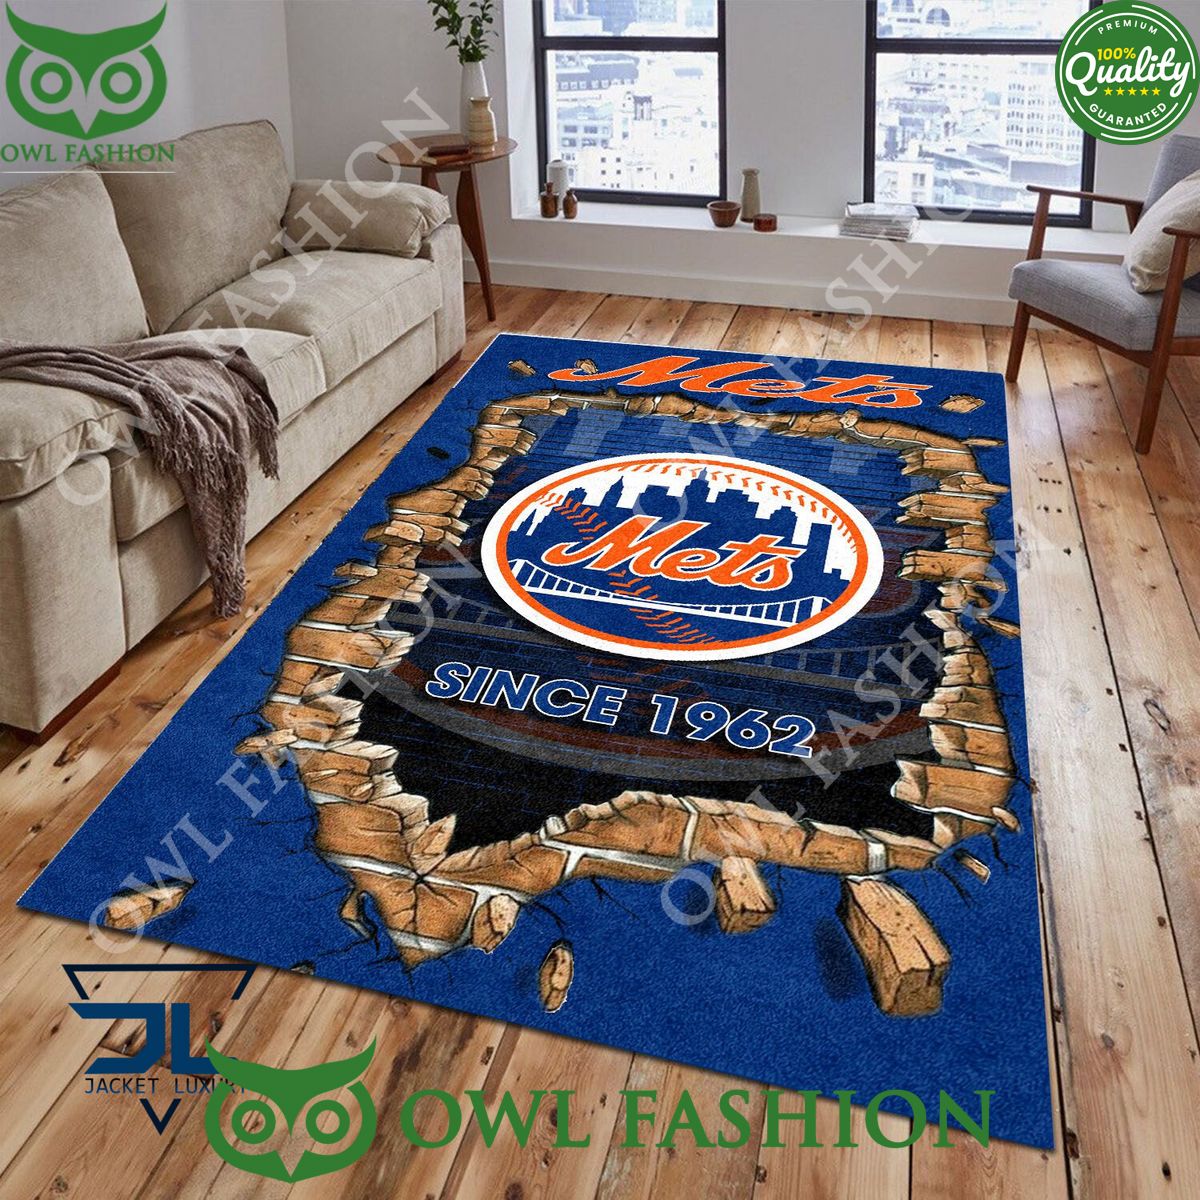 broken wall new york mets mlb baseball team rug carpet living room 1 kfahj.jpg